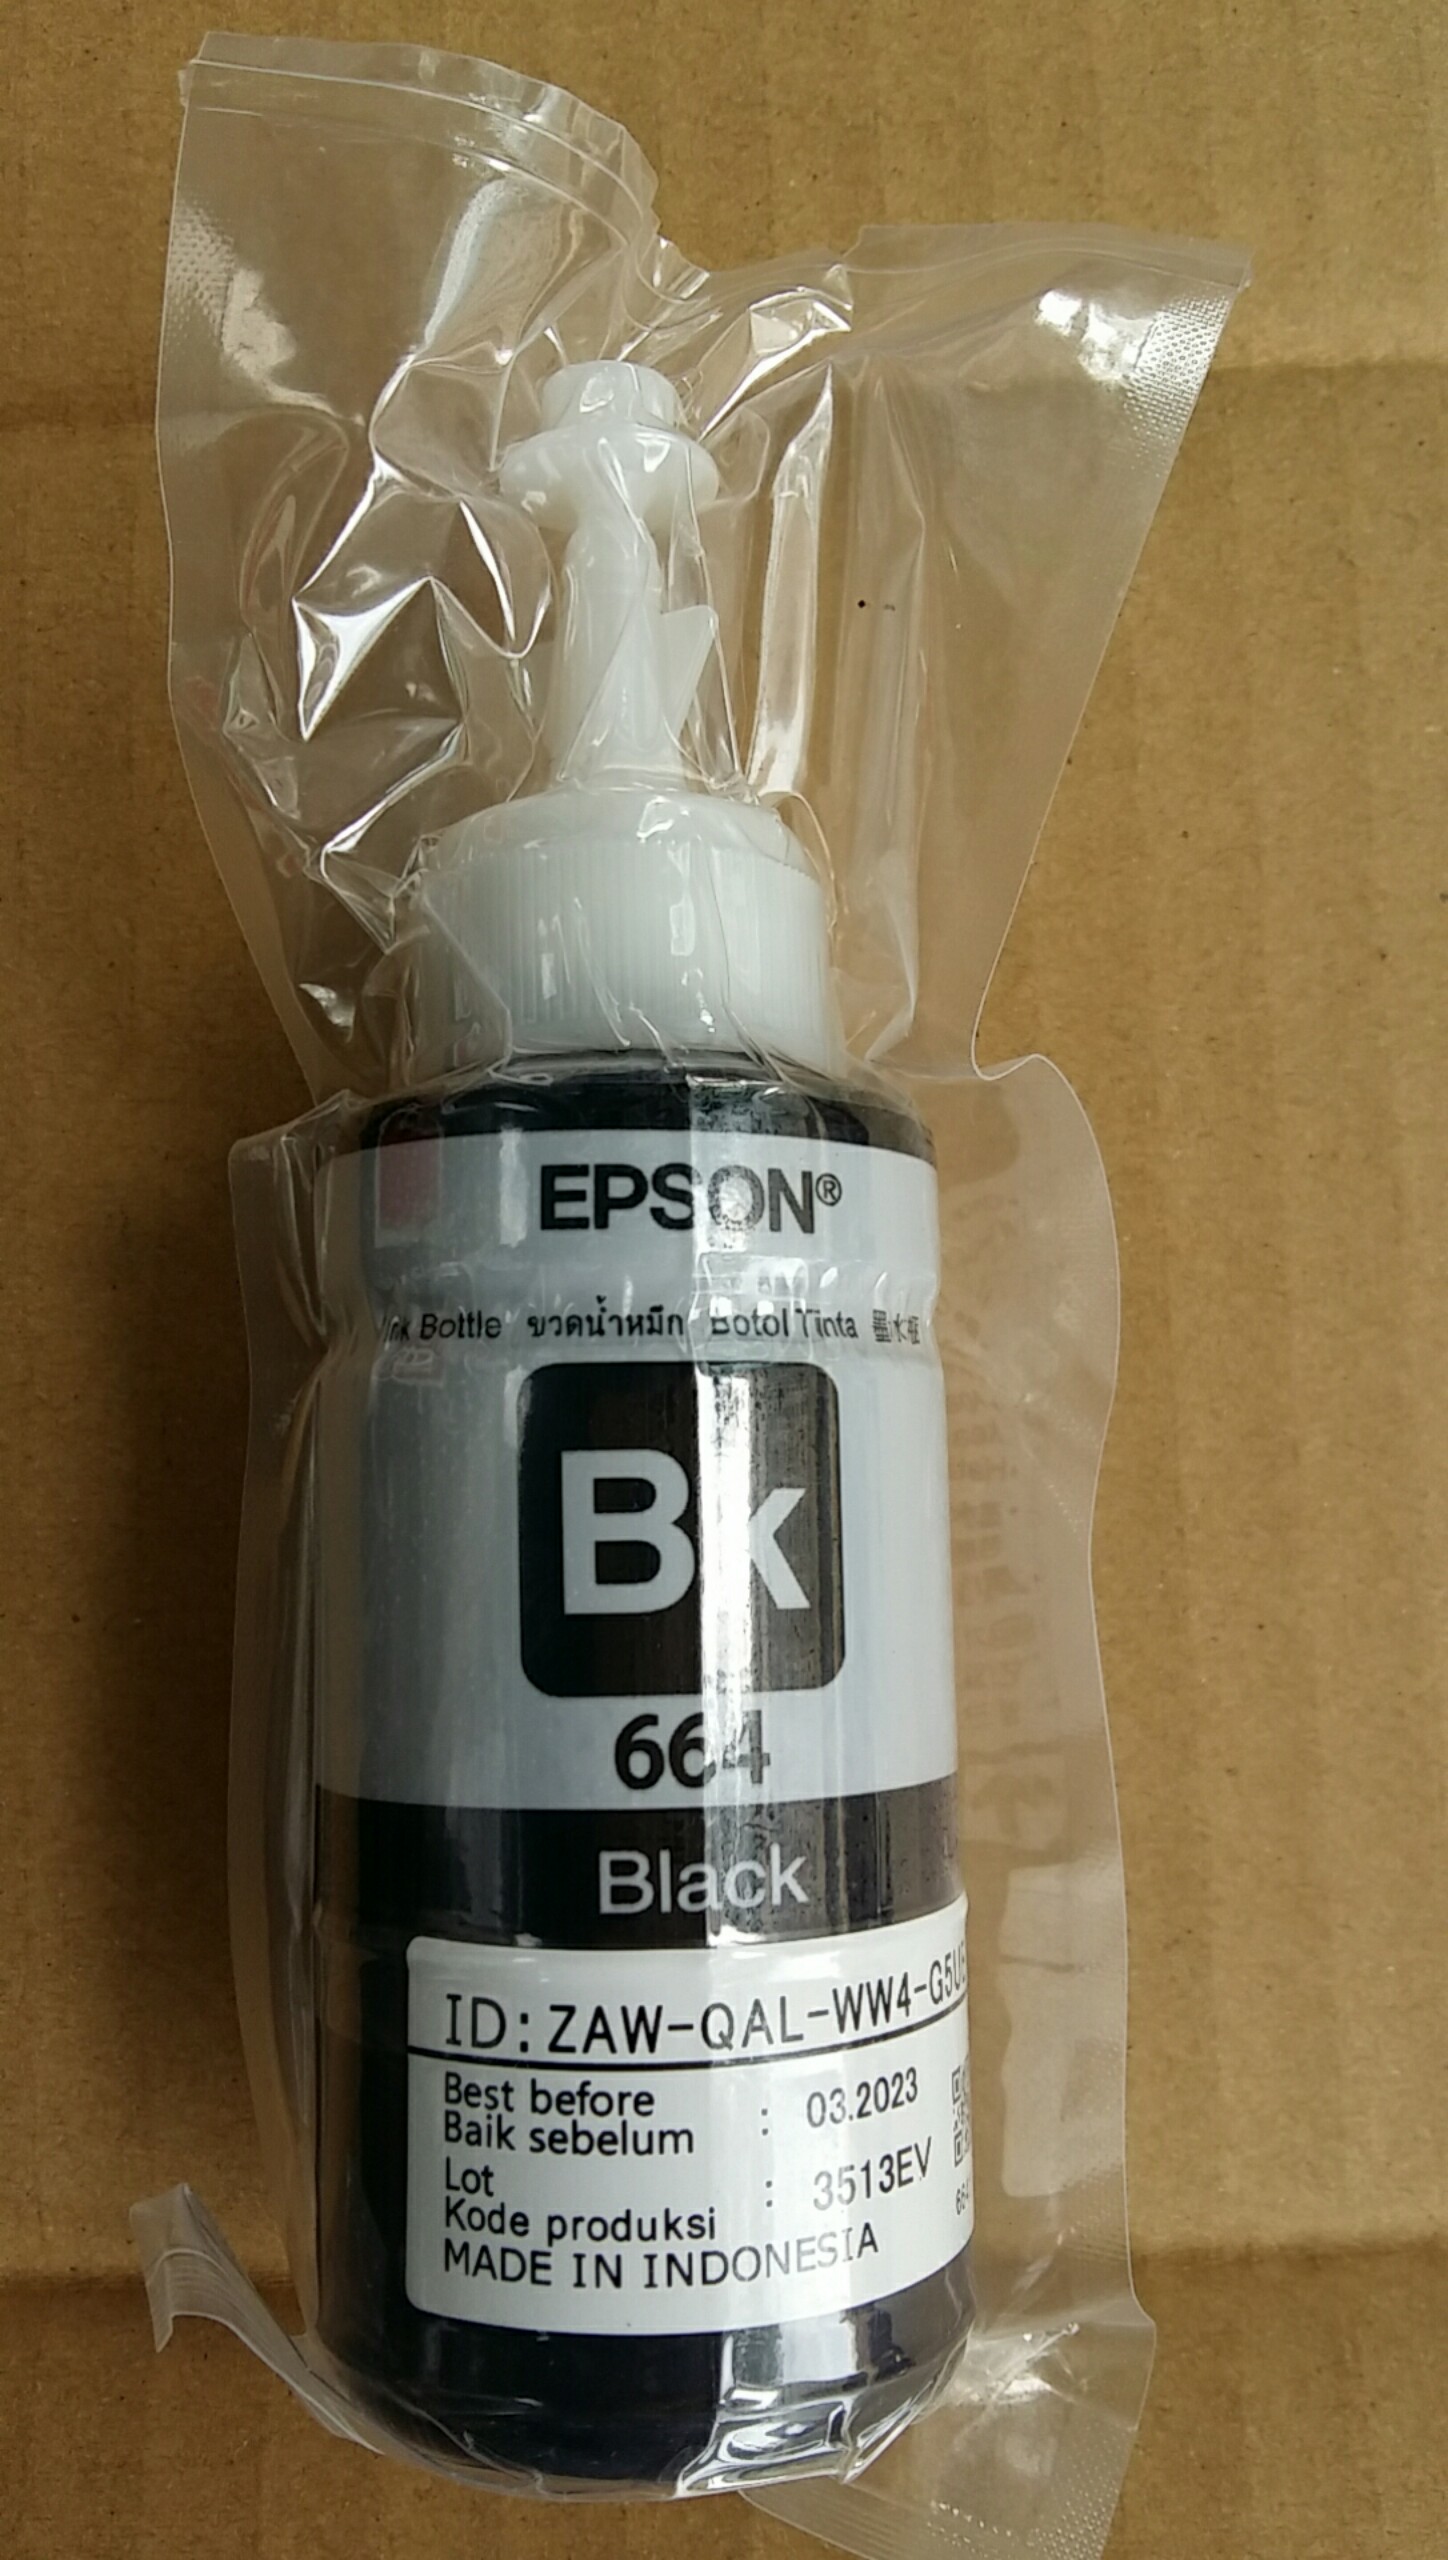 Epson 664 BK màu đen-cho epson l300/310/350/360/L1300 hàng bóc máy